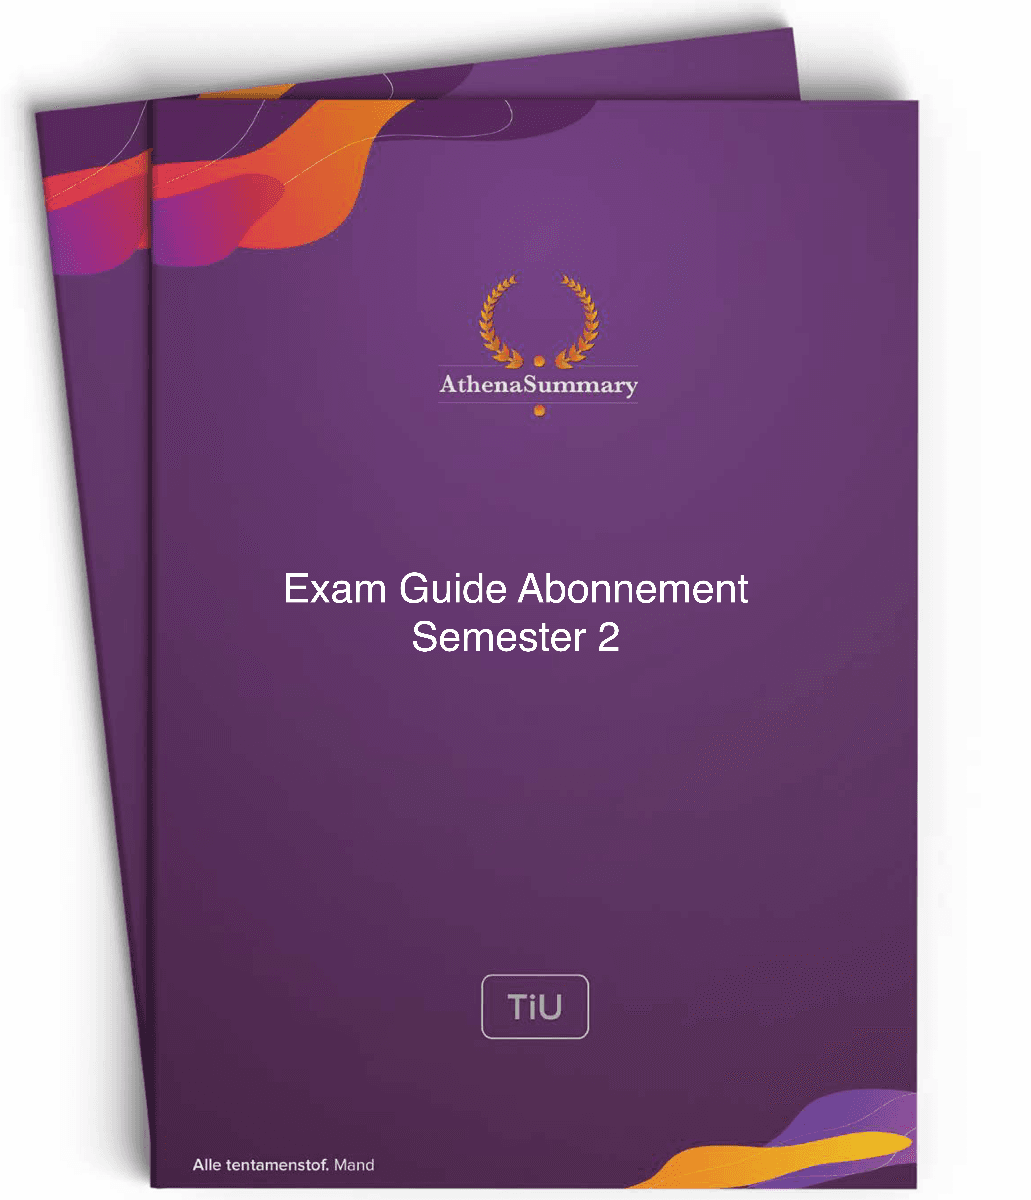 Exam Guide Abonnement - Semester 2 